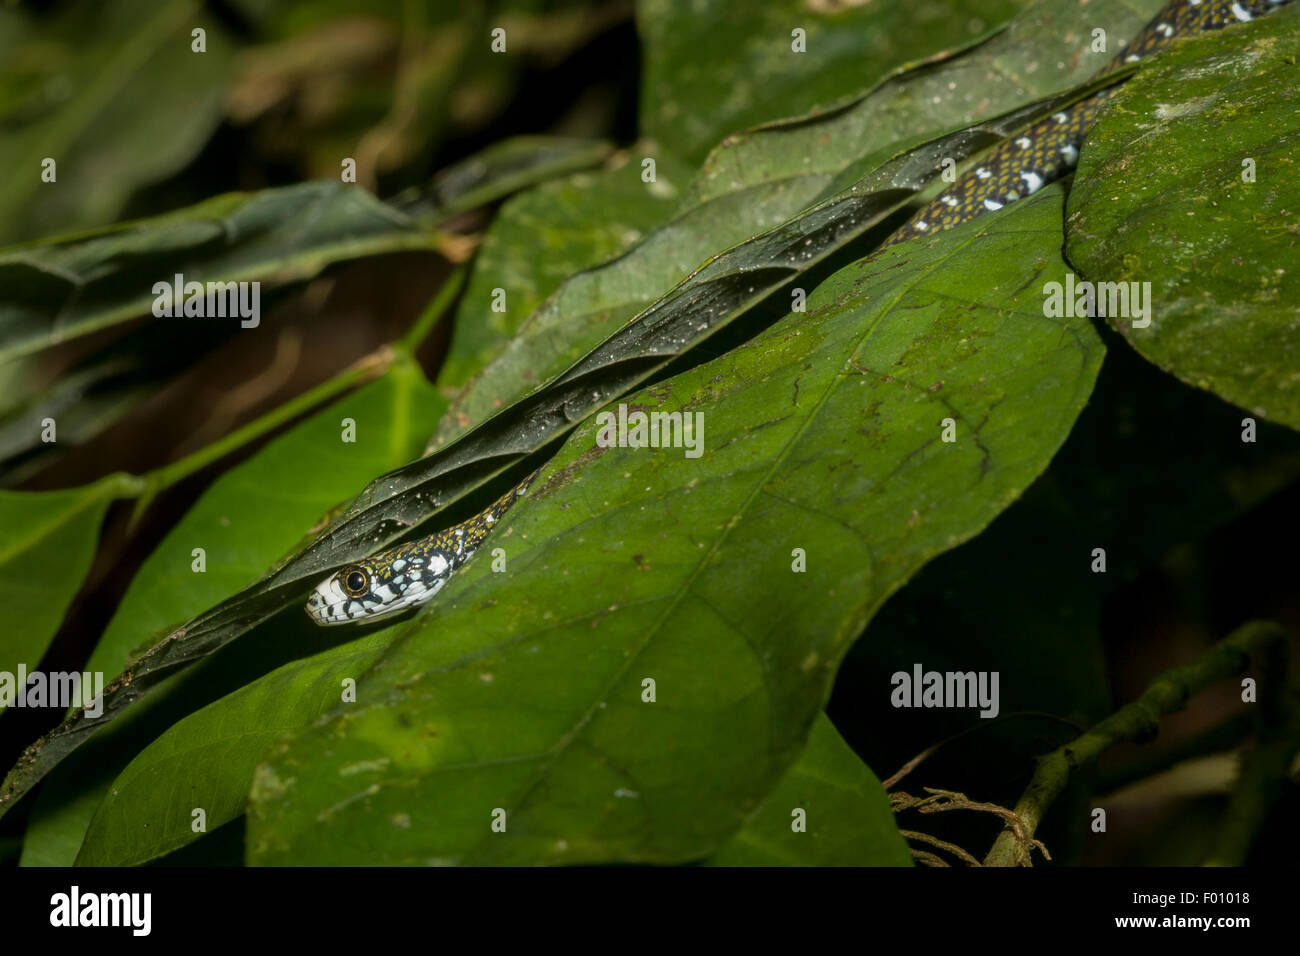 Un serpent d'eau à front blanc (Amphiesma flavifrons) cachés dans les feuilles d'un arbre. Banque D'Images